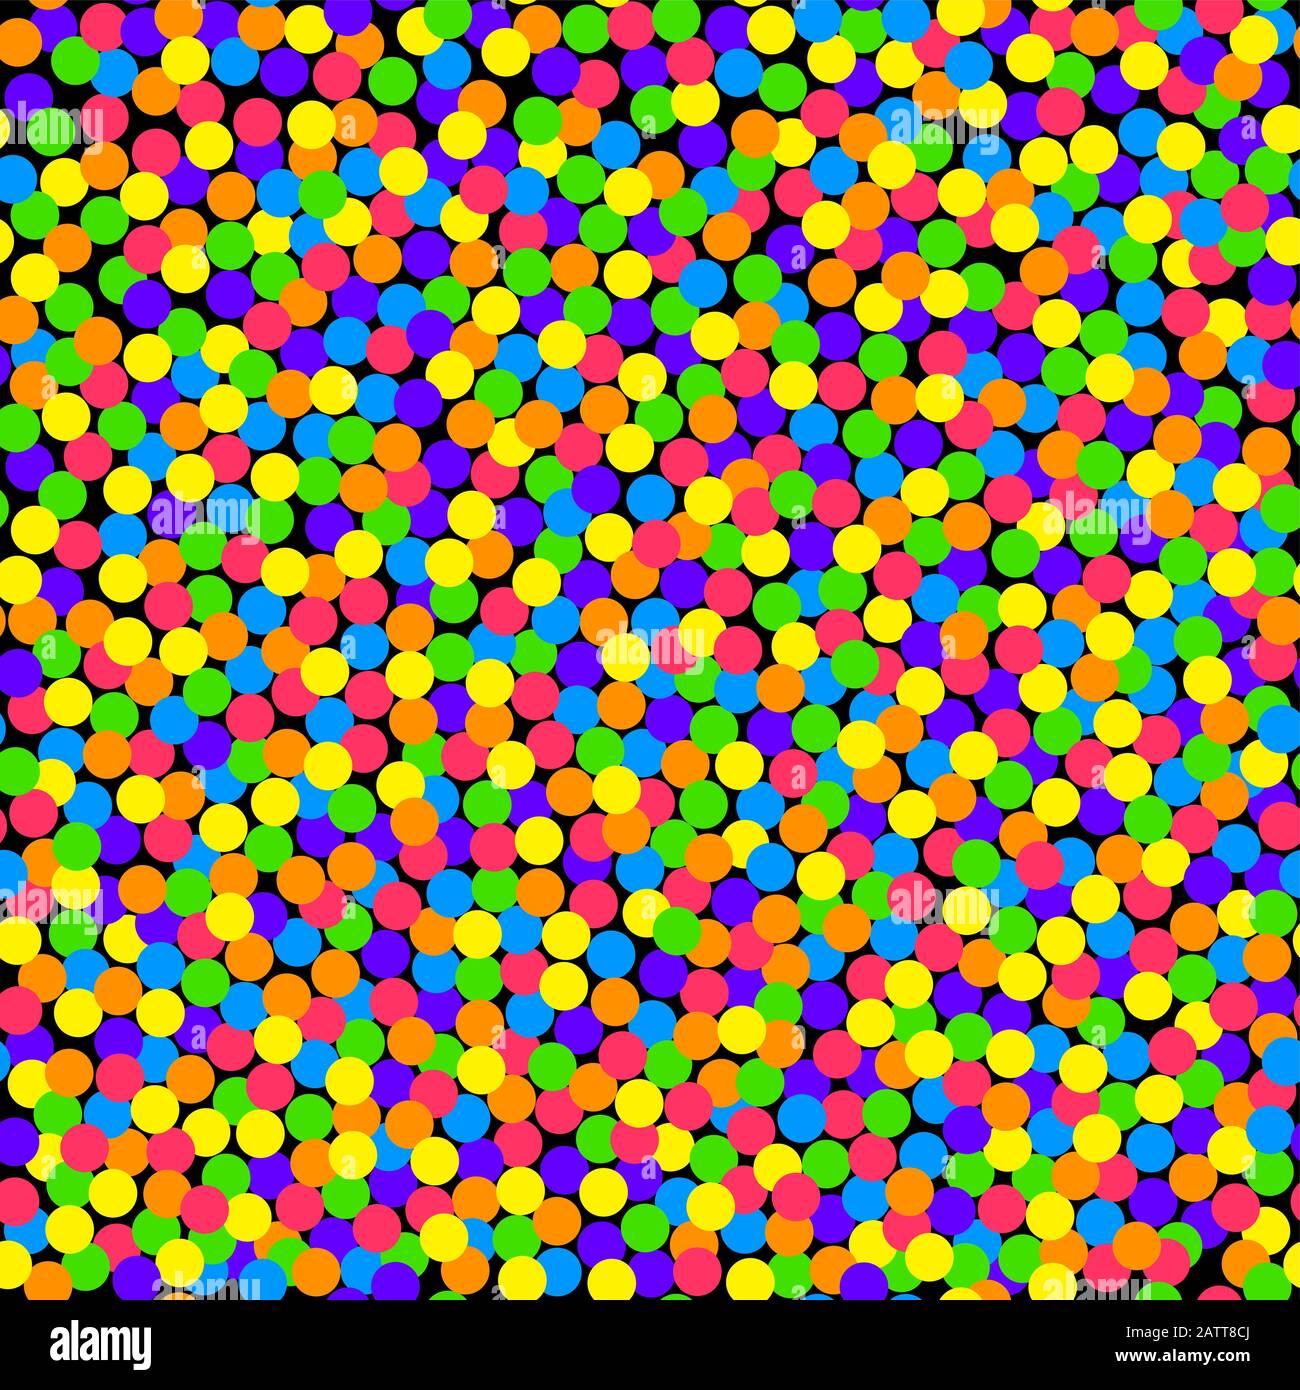 Farbenfroher Konfettihintergrund, nahtlose Kachel. Kleine Punkte in kräftigen und gesättigten Farben, zufällig verteilt auf einen quadratisch geformten schwarzen Hintergrund. Stockfoto